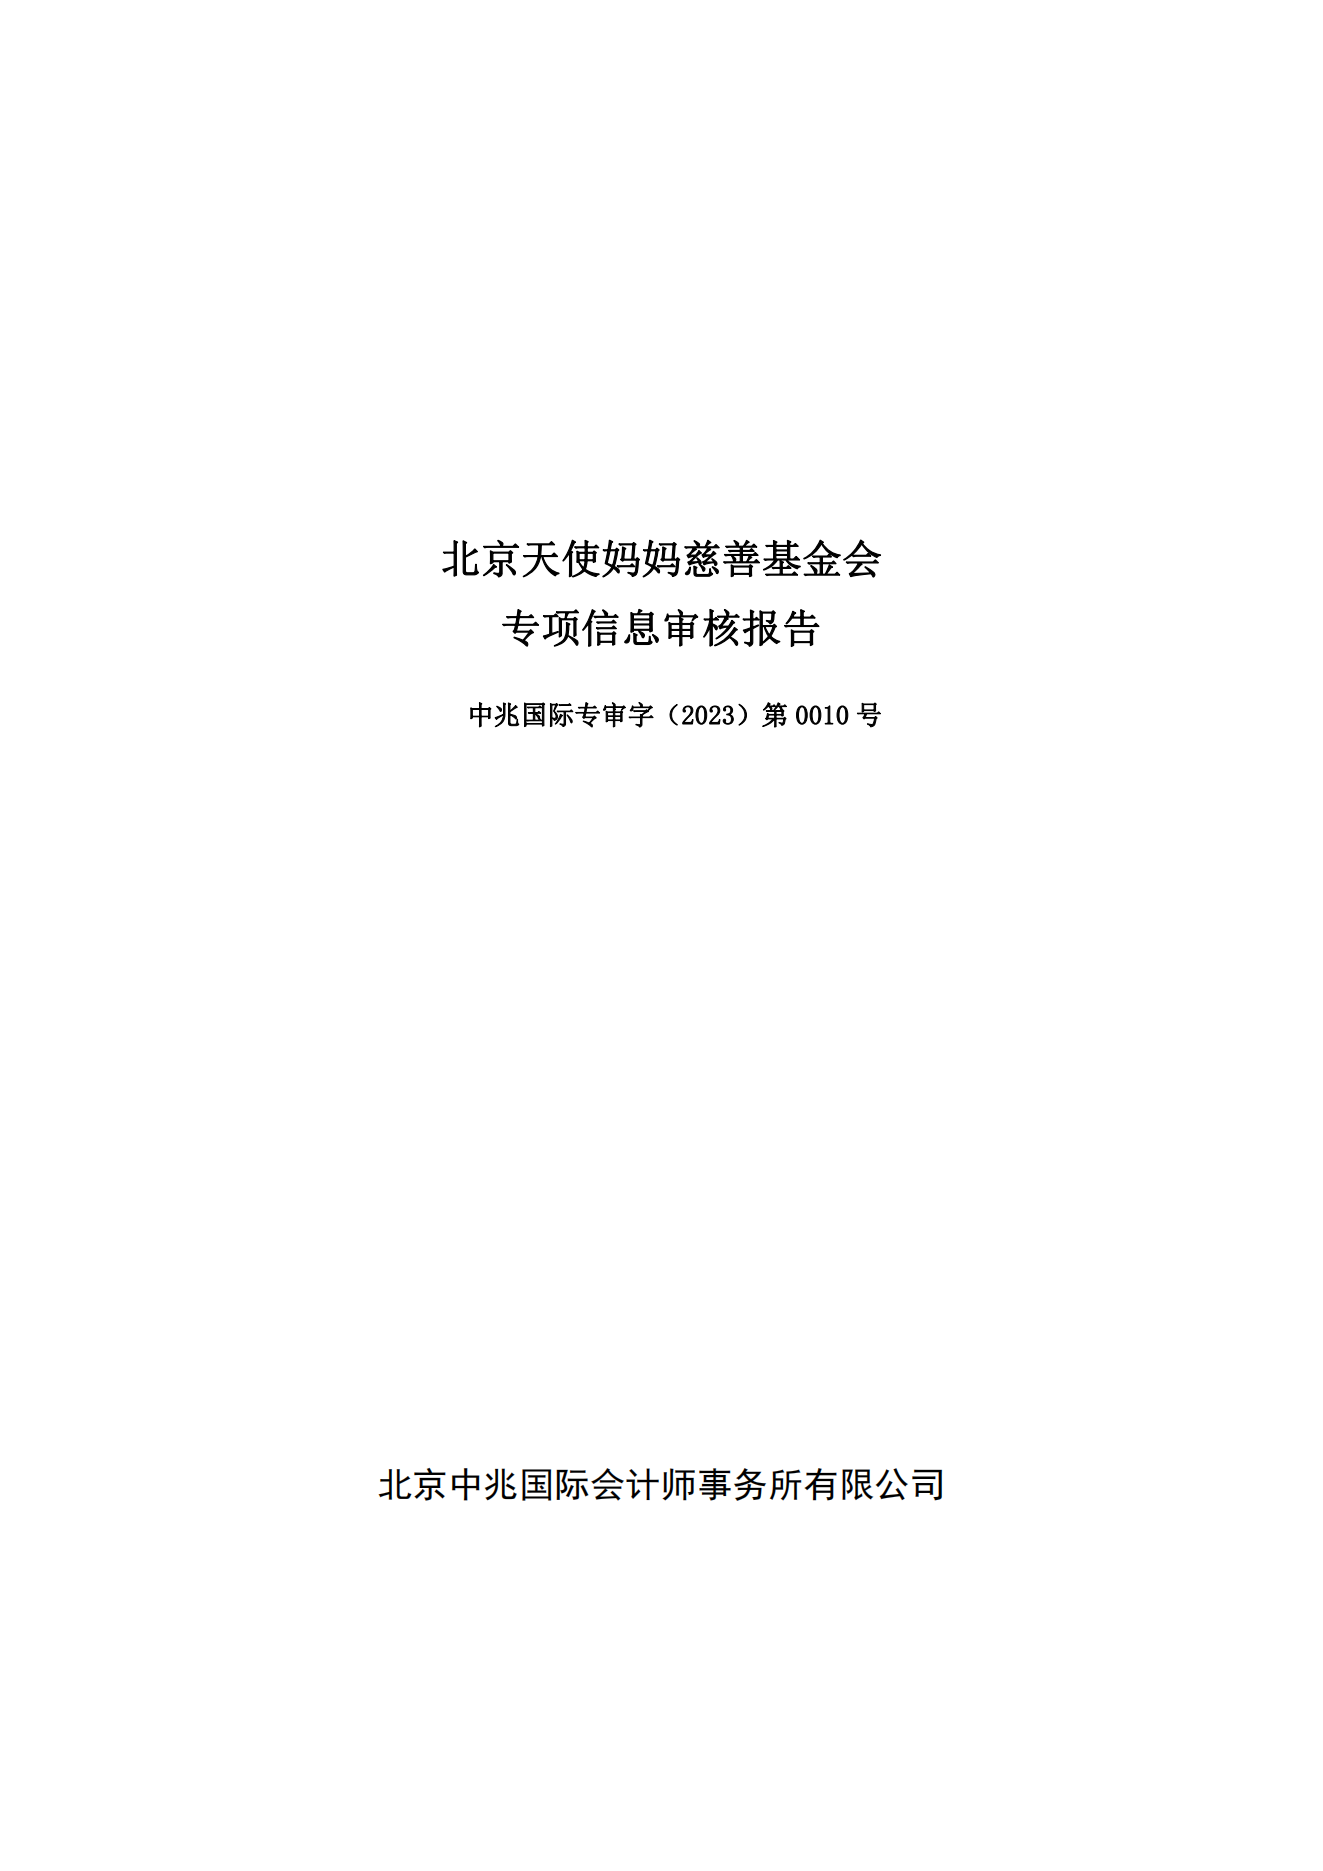 2、北京天使妈妈慈善基金会-2022年度专项信息审核报告-电子签章(1)_00.png